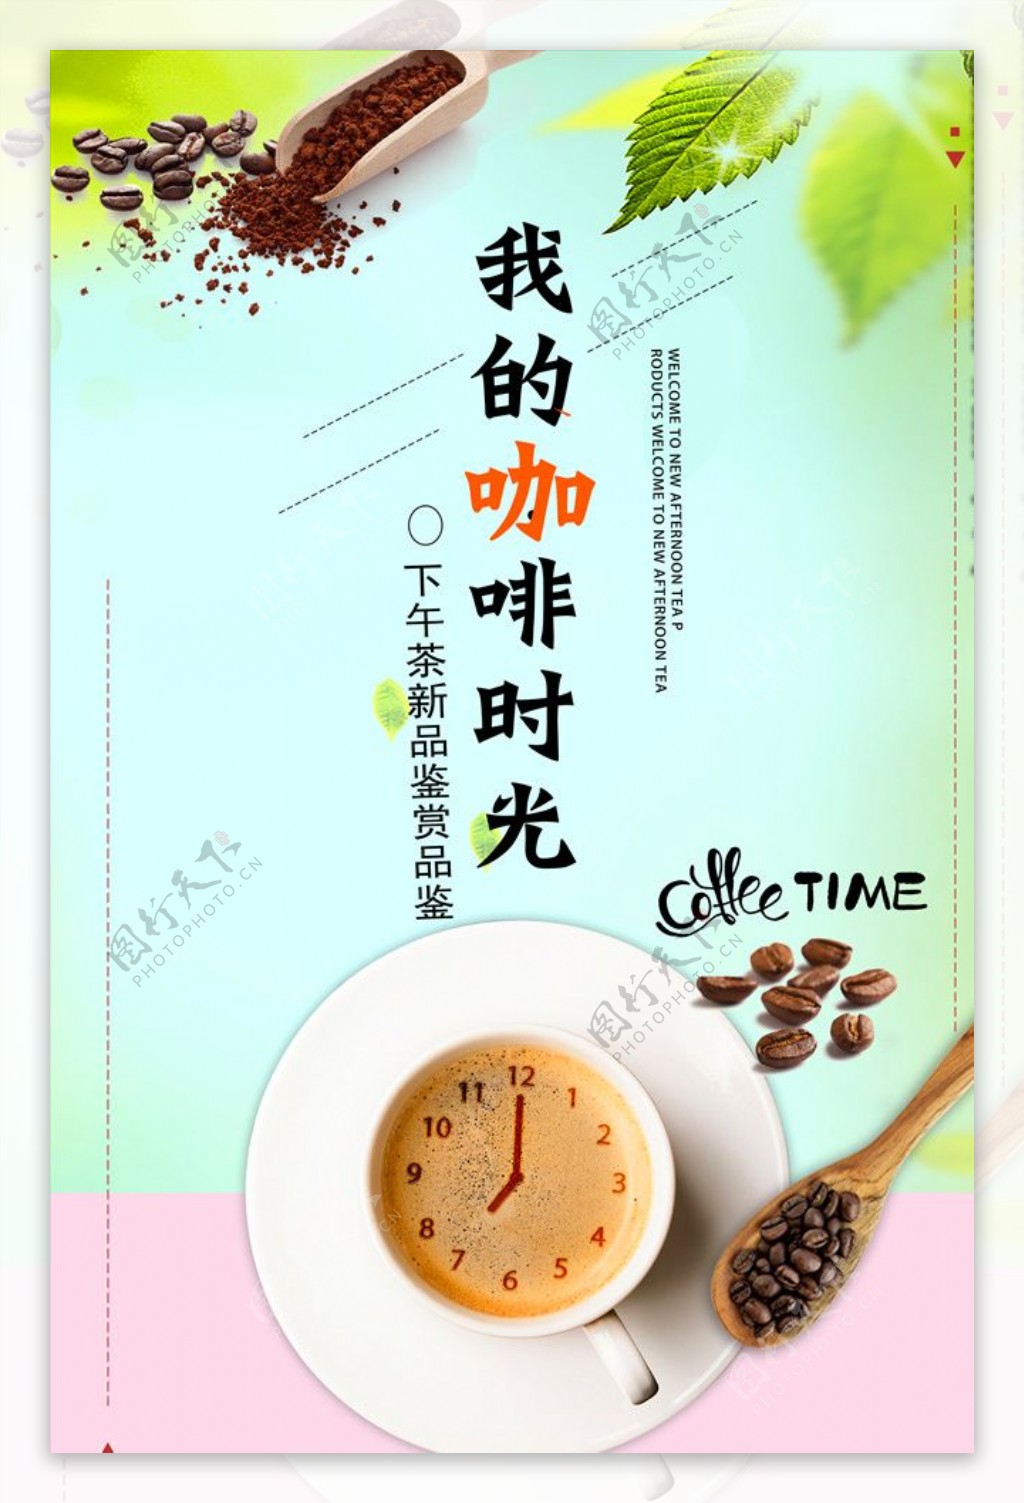 我的咖啡时光咖啡宣传海报